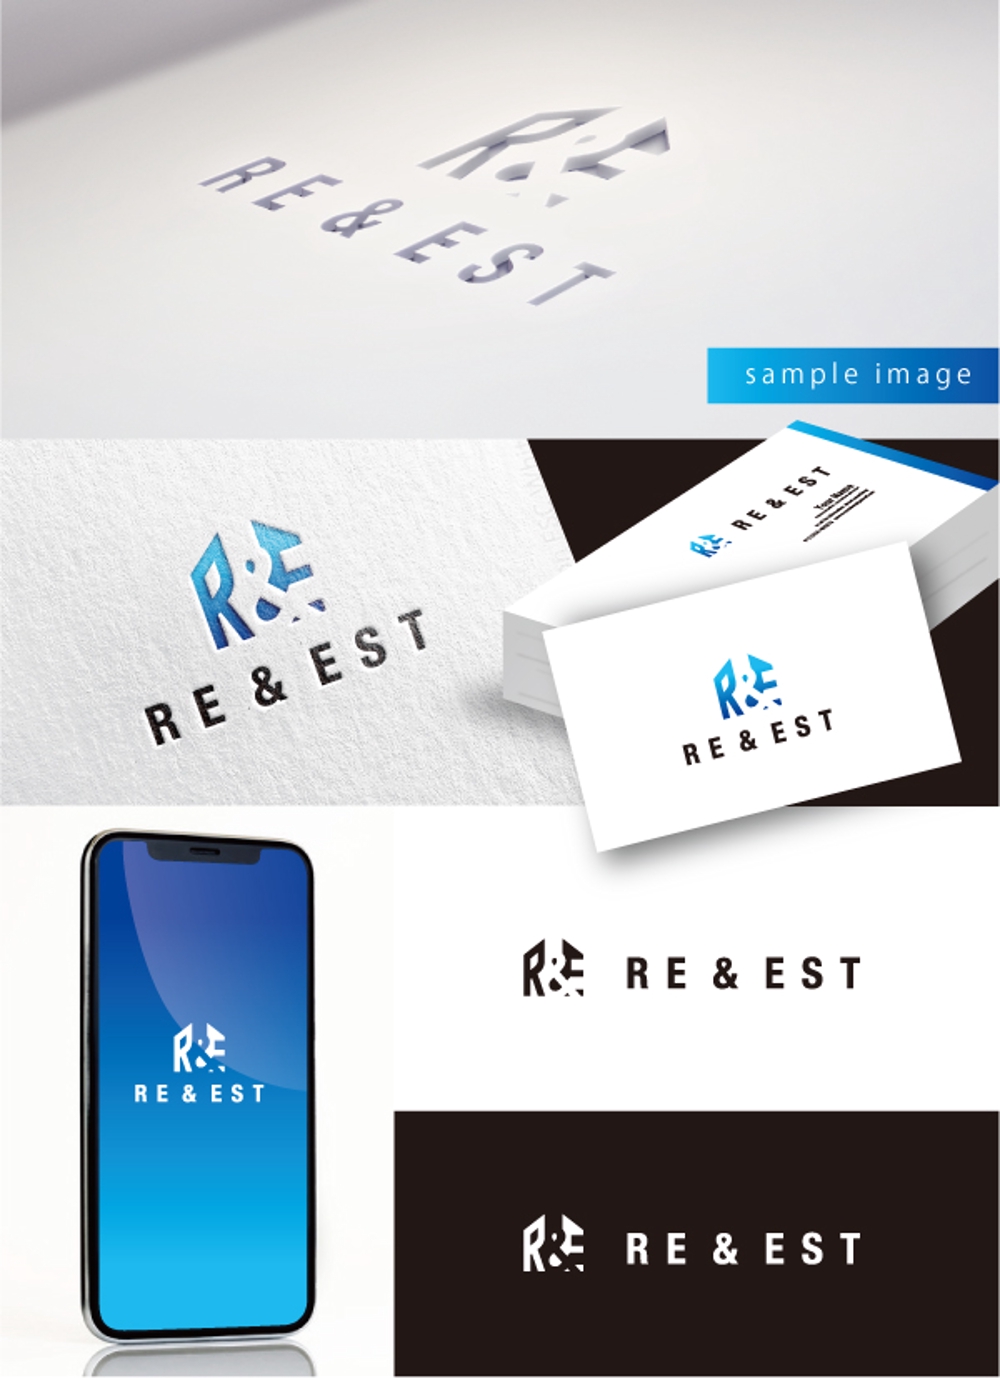 リフォーム、不動産事業「RE＆EST」(リアンドエスト)のロゴ作成